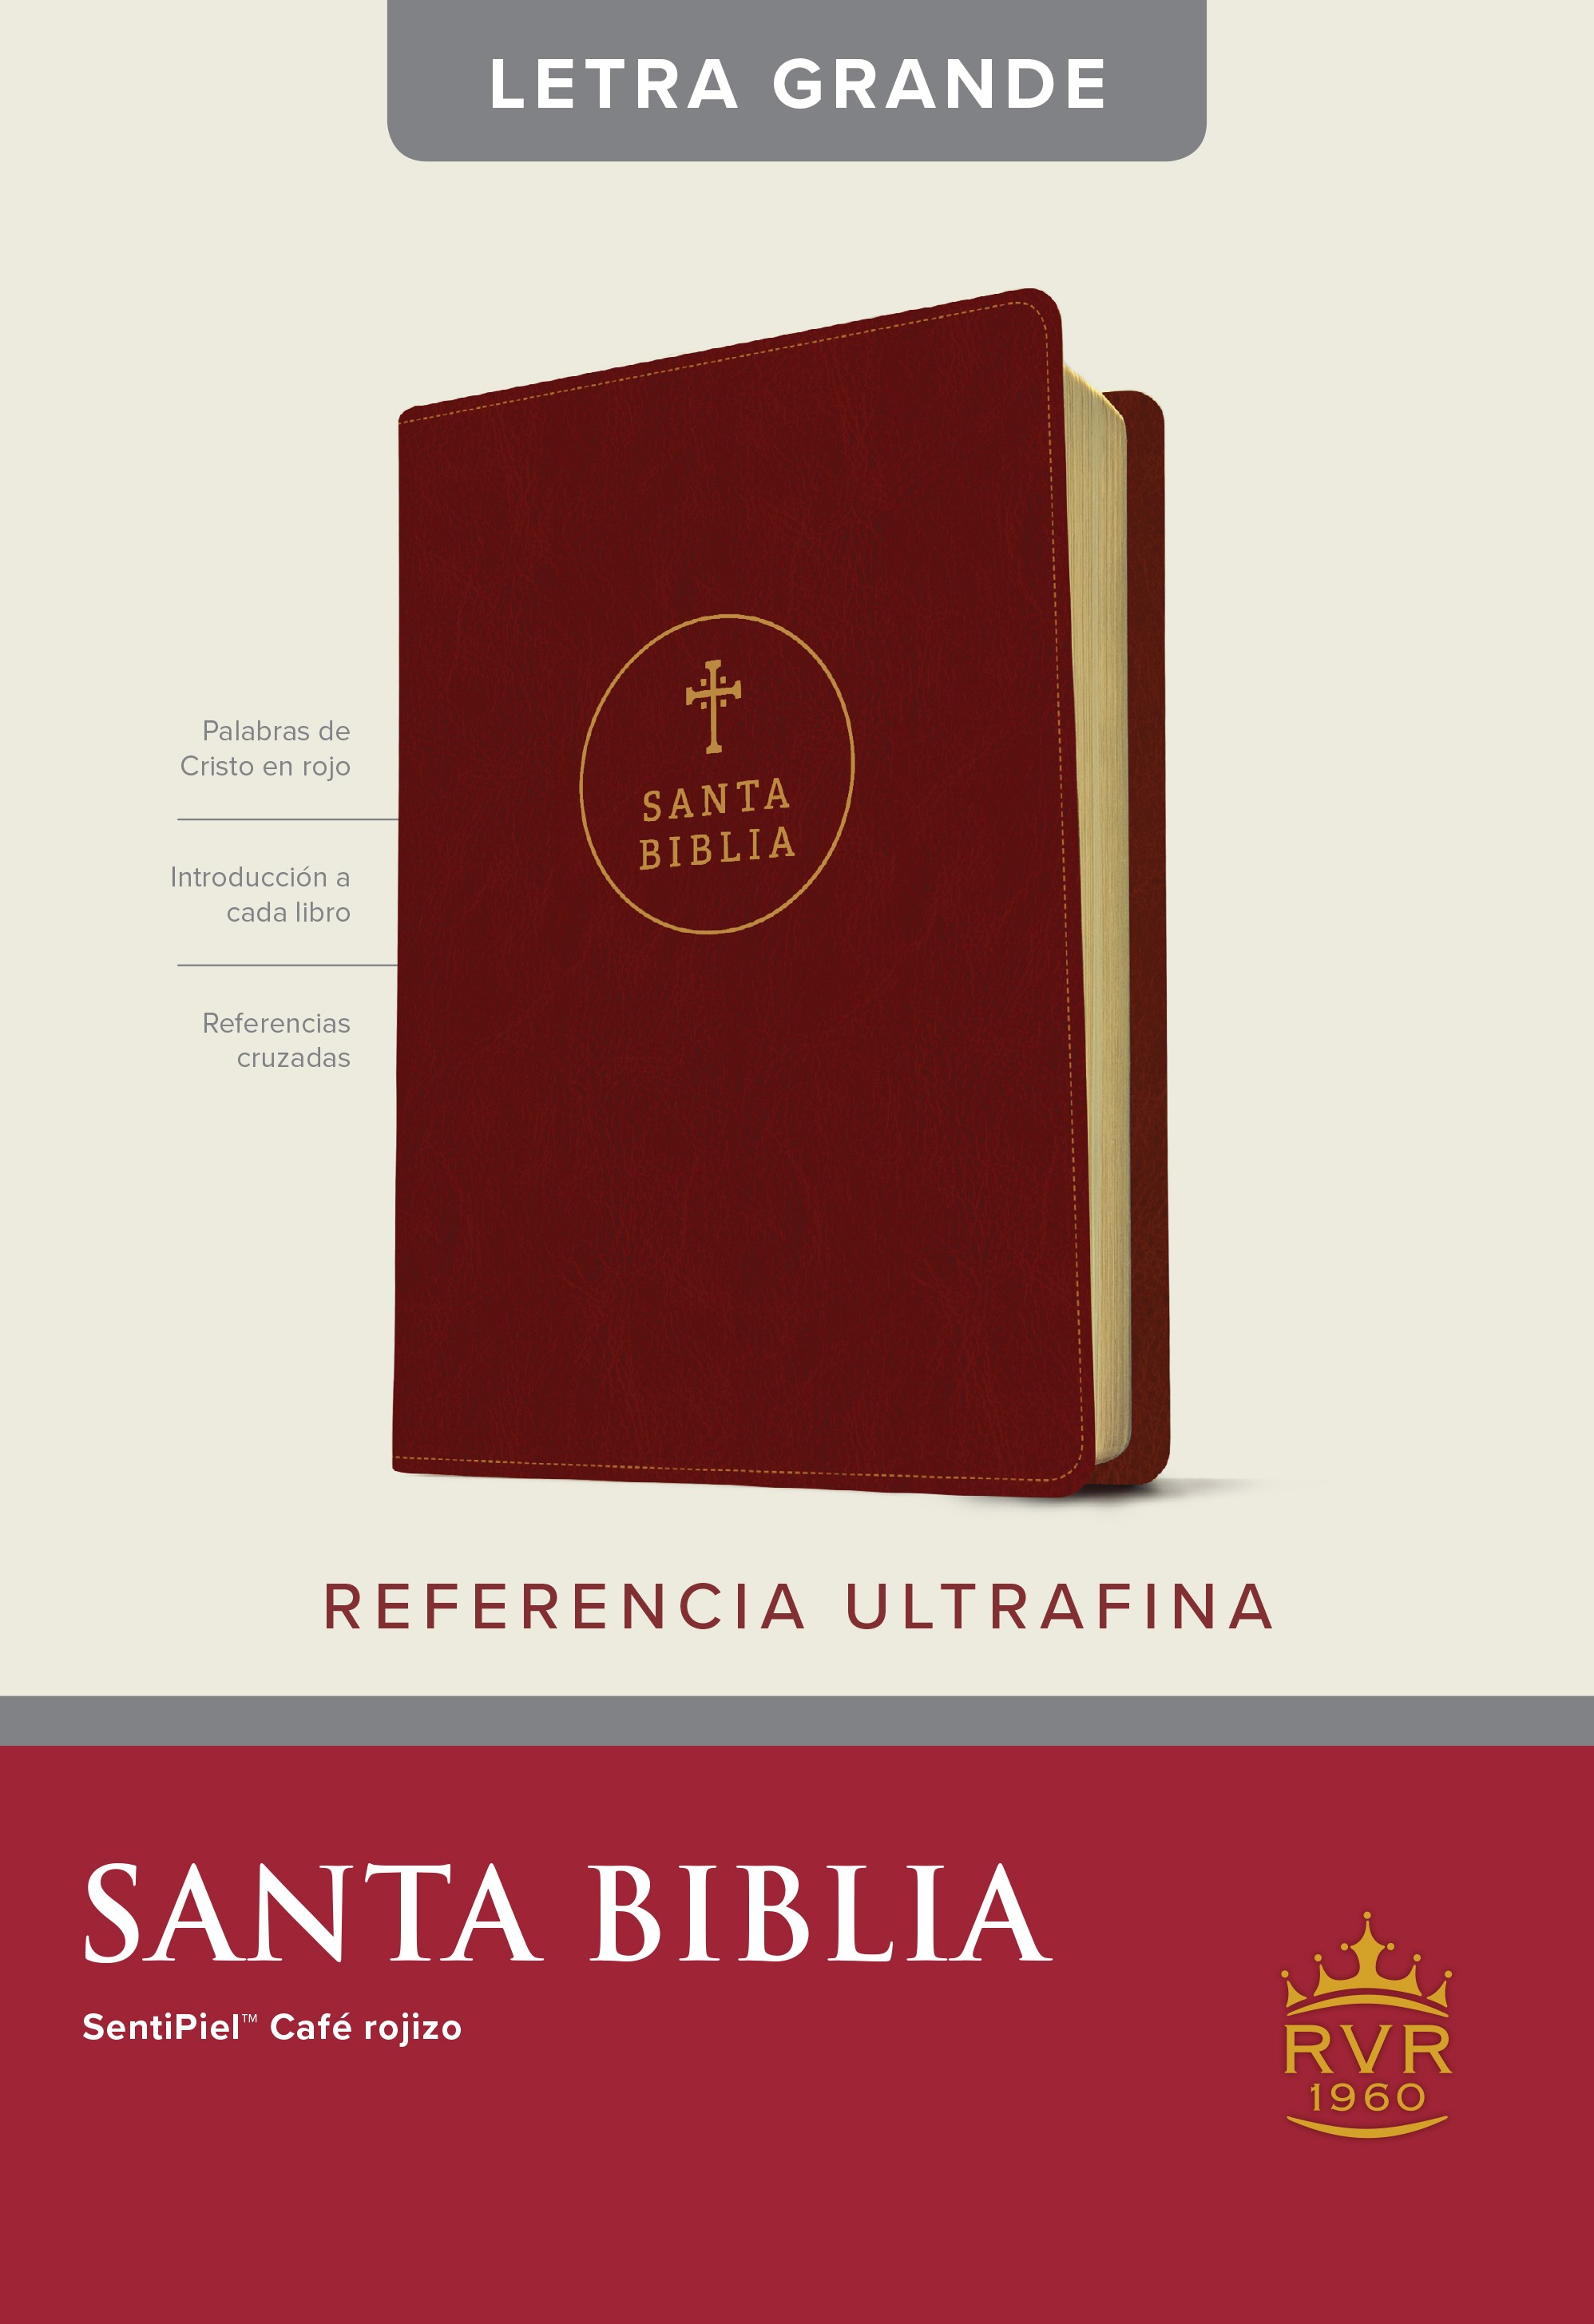  Santa Biblia RVR60, Edición de referencia ultrafina, letra grande (SentiPiel, Café rojizo, Letra Roja)